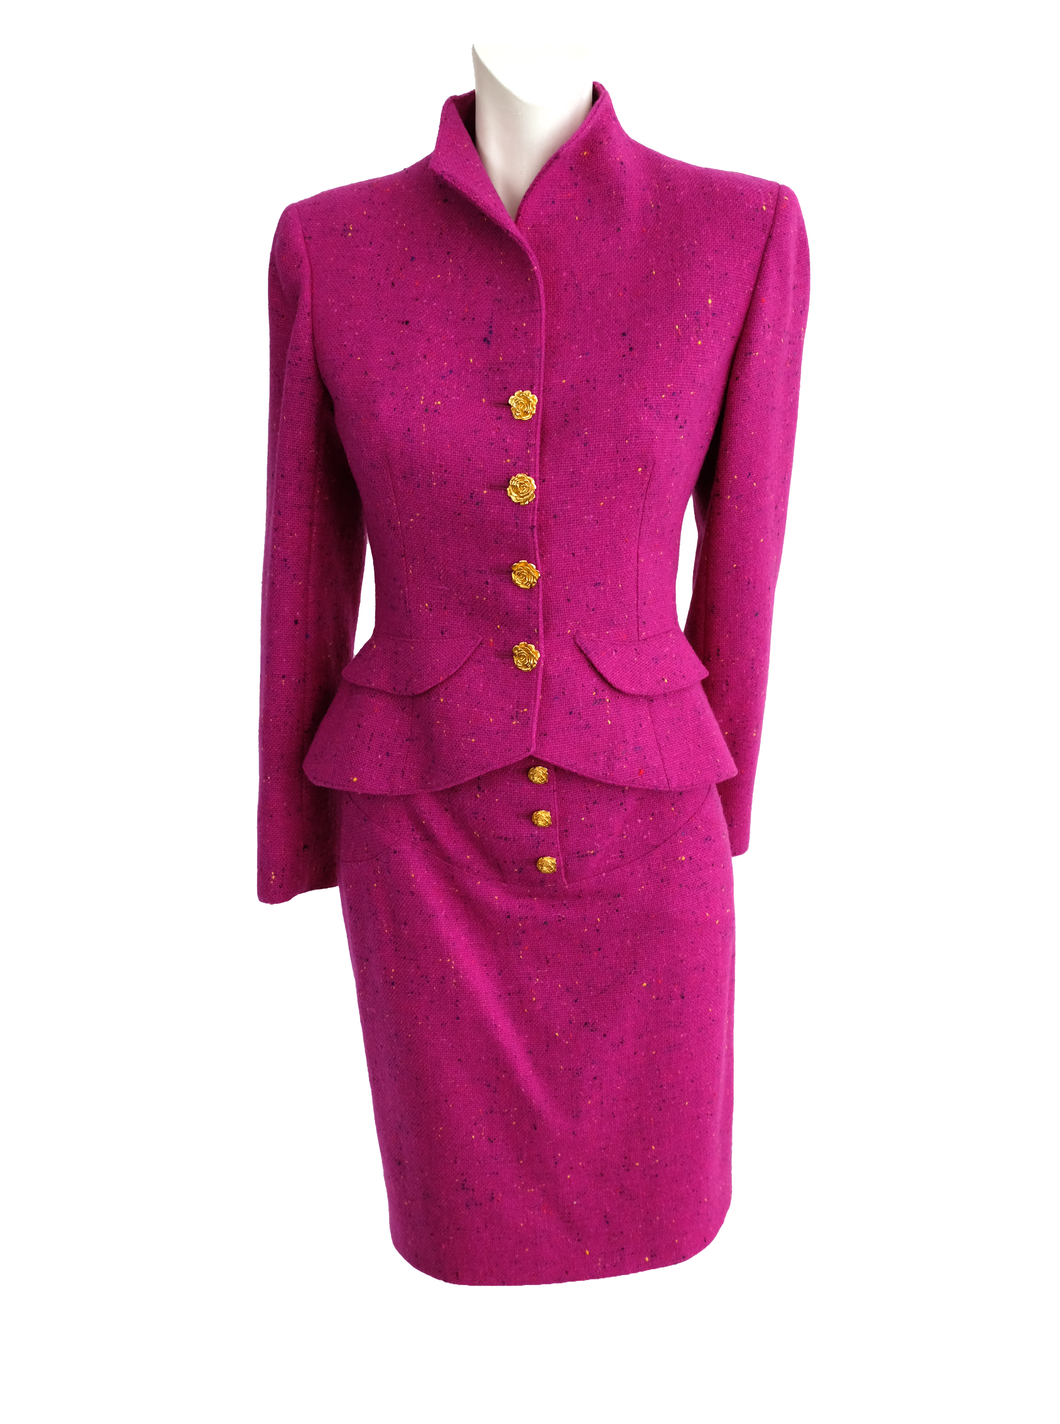 Emanuel Ungaro Vintage Skirt Suit in Flecked Magenta Wool, UK10